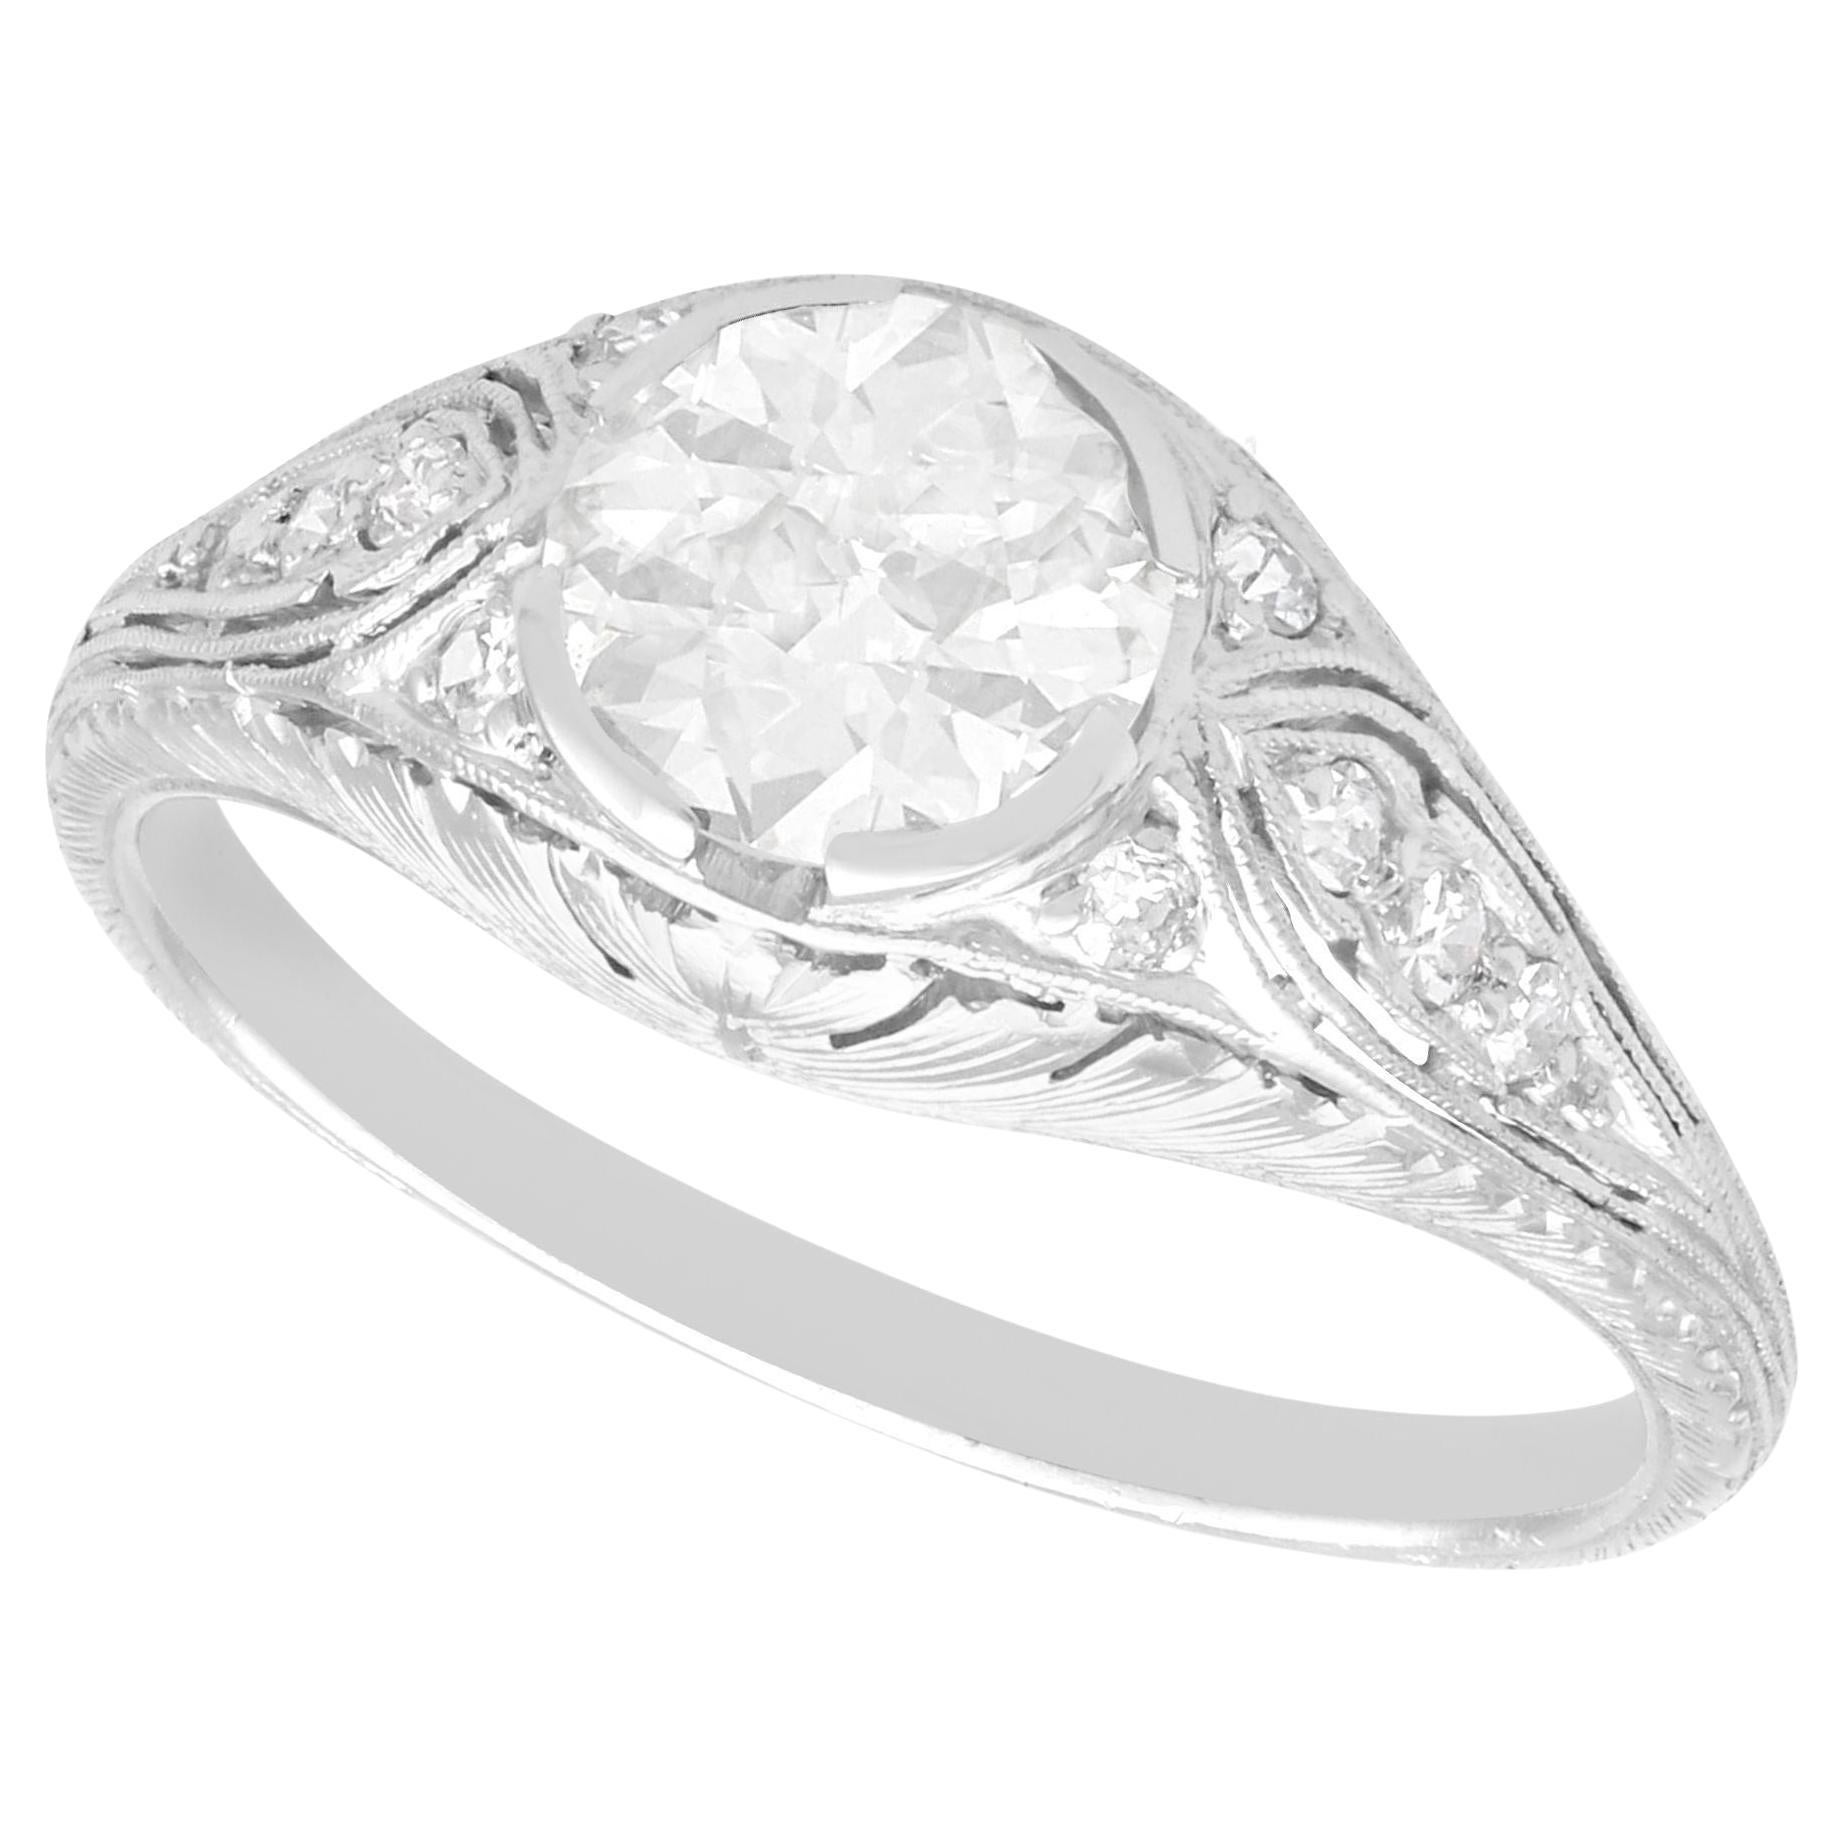 Antique 1.12 Carat Diamond and Platinum Solitaire Ring, Circa 1925 For Sale